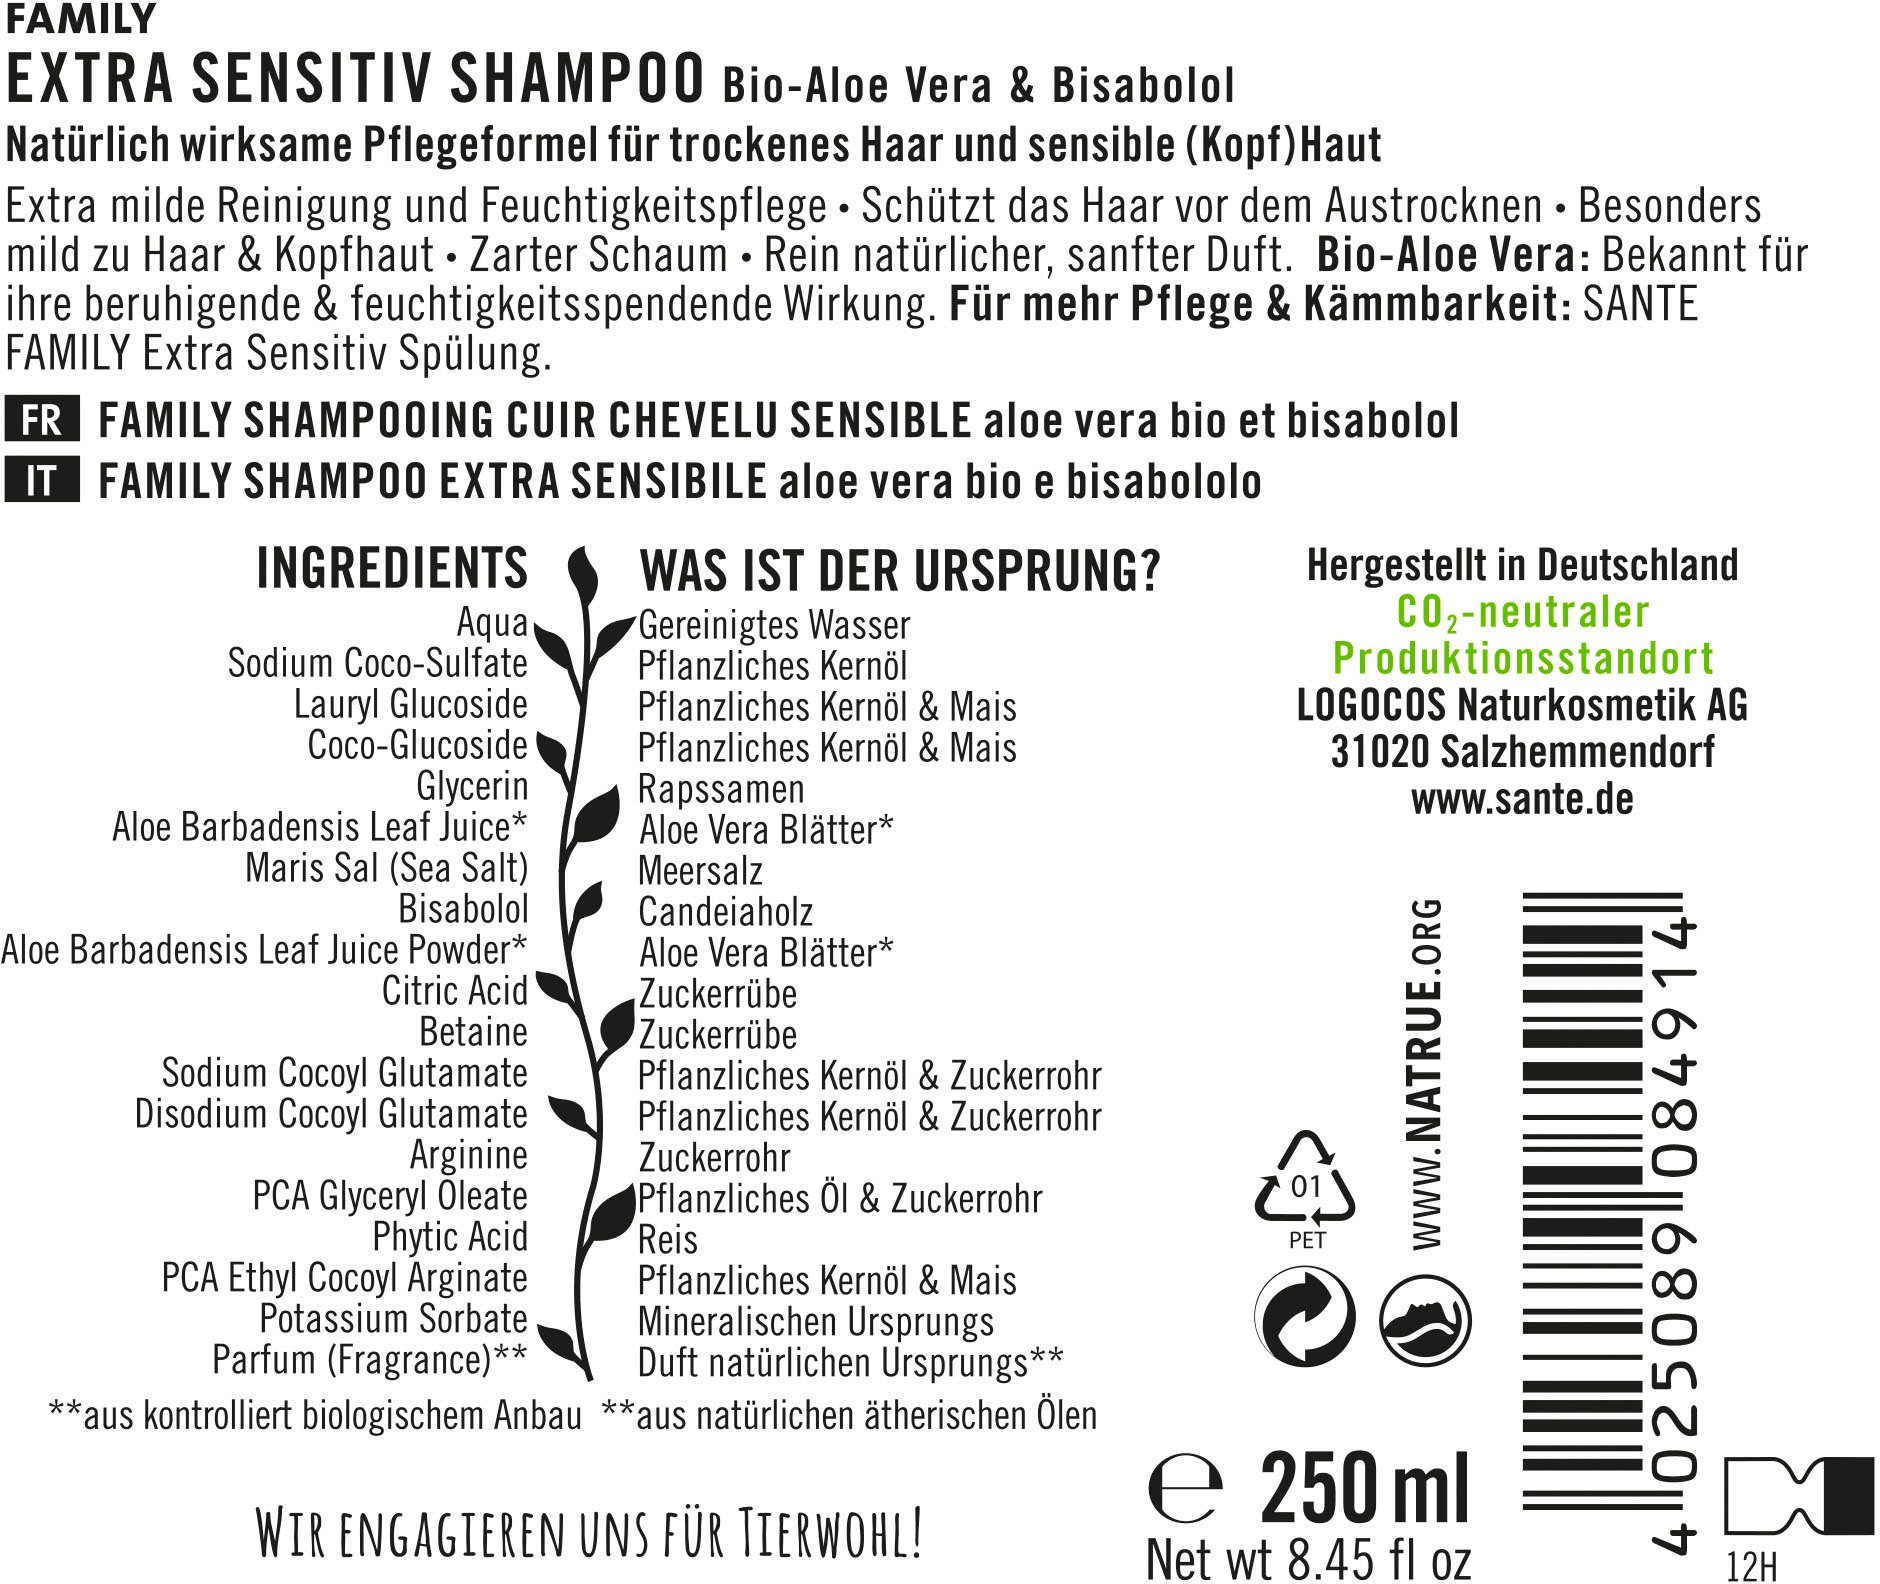 Sensitiv Shampoo Extra FAMILY Haarshampoo SANTE